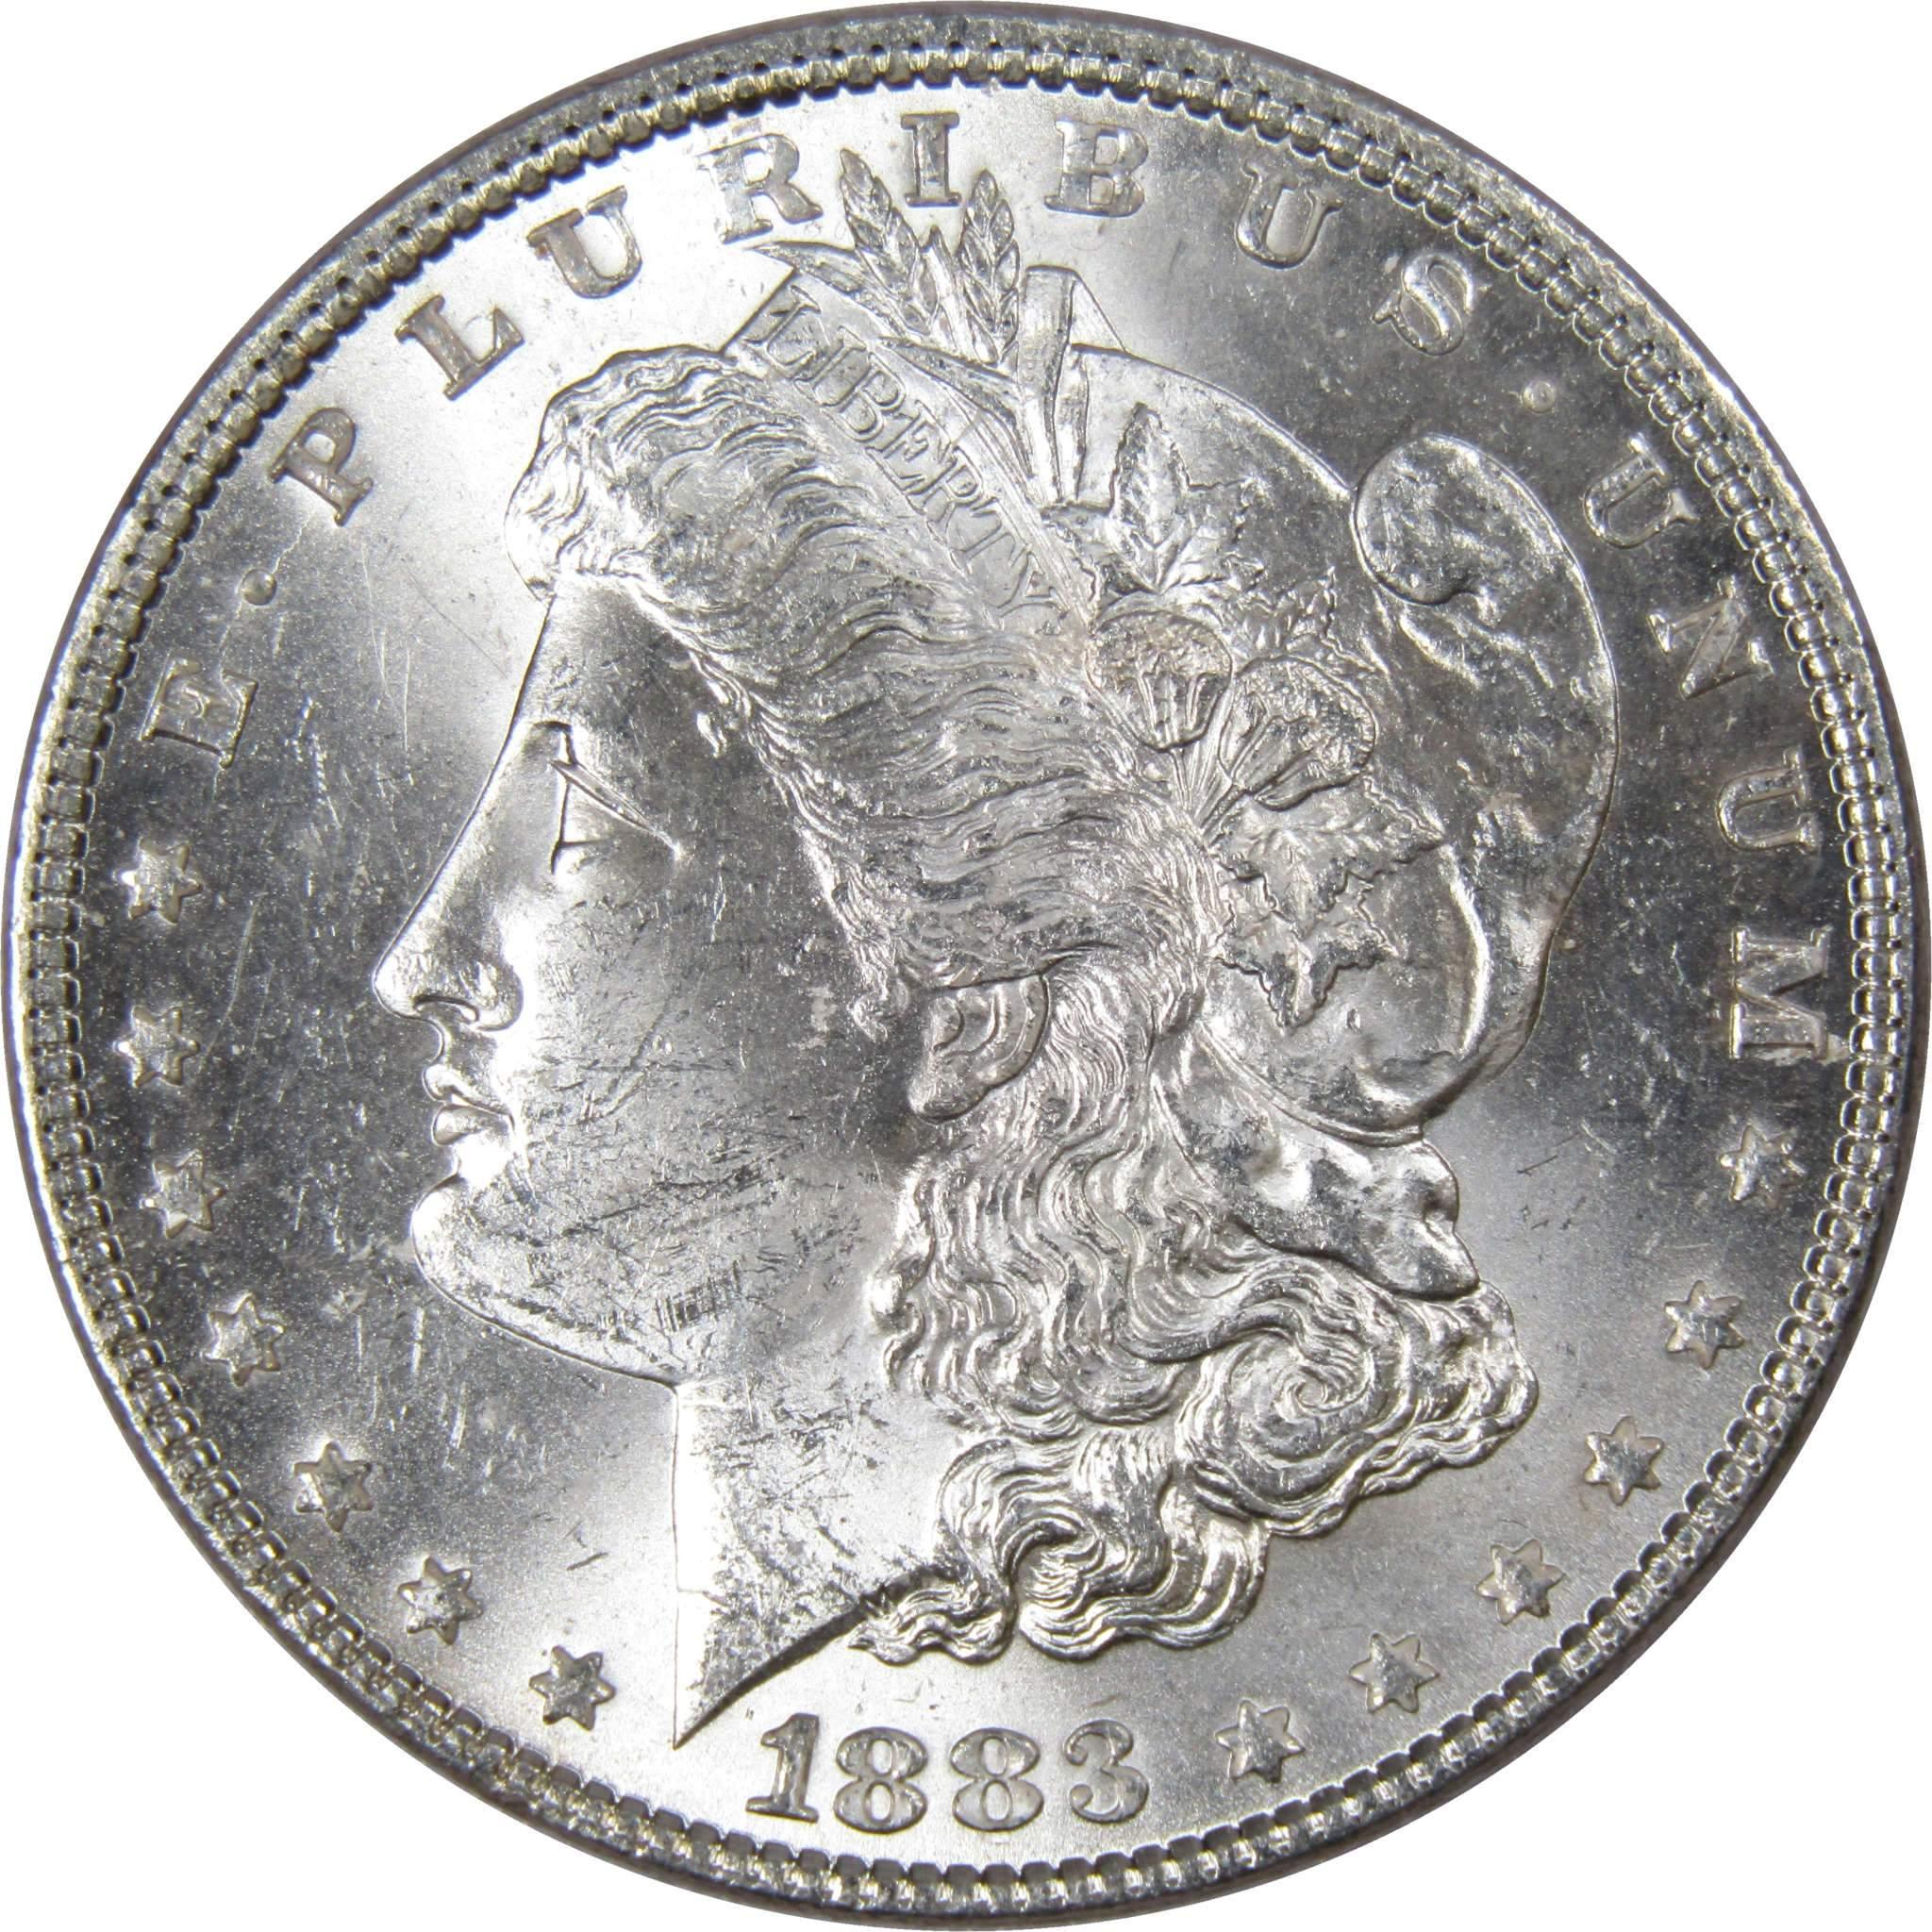 1883 Morgan Dollar BU Uncirculated Mint State 90% Silver $1 US Coin Collectible - Morgan coin - Morgan silver dollar - Morgan silver dollar for sale - Profile Coins &amp; Collectibles